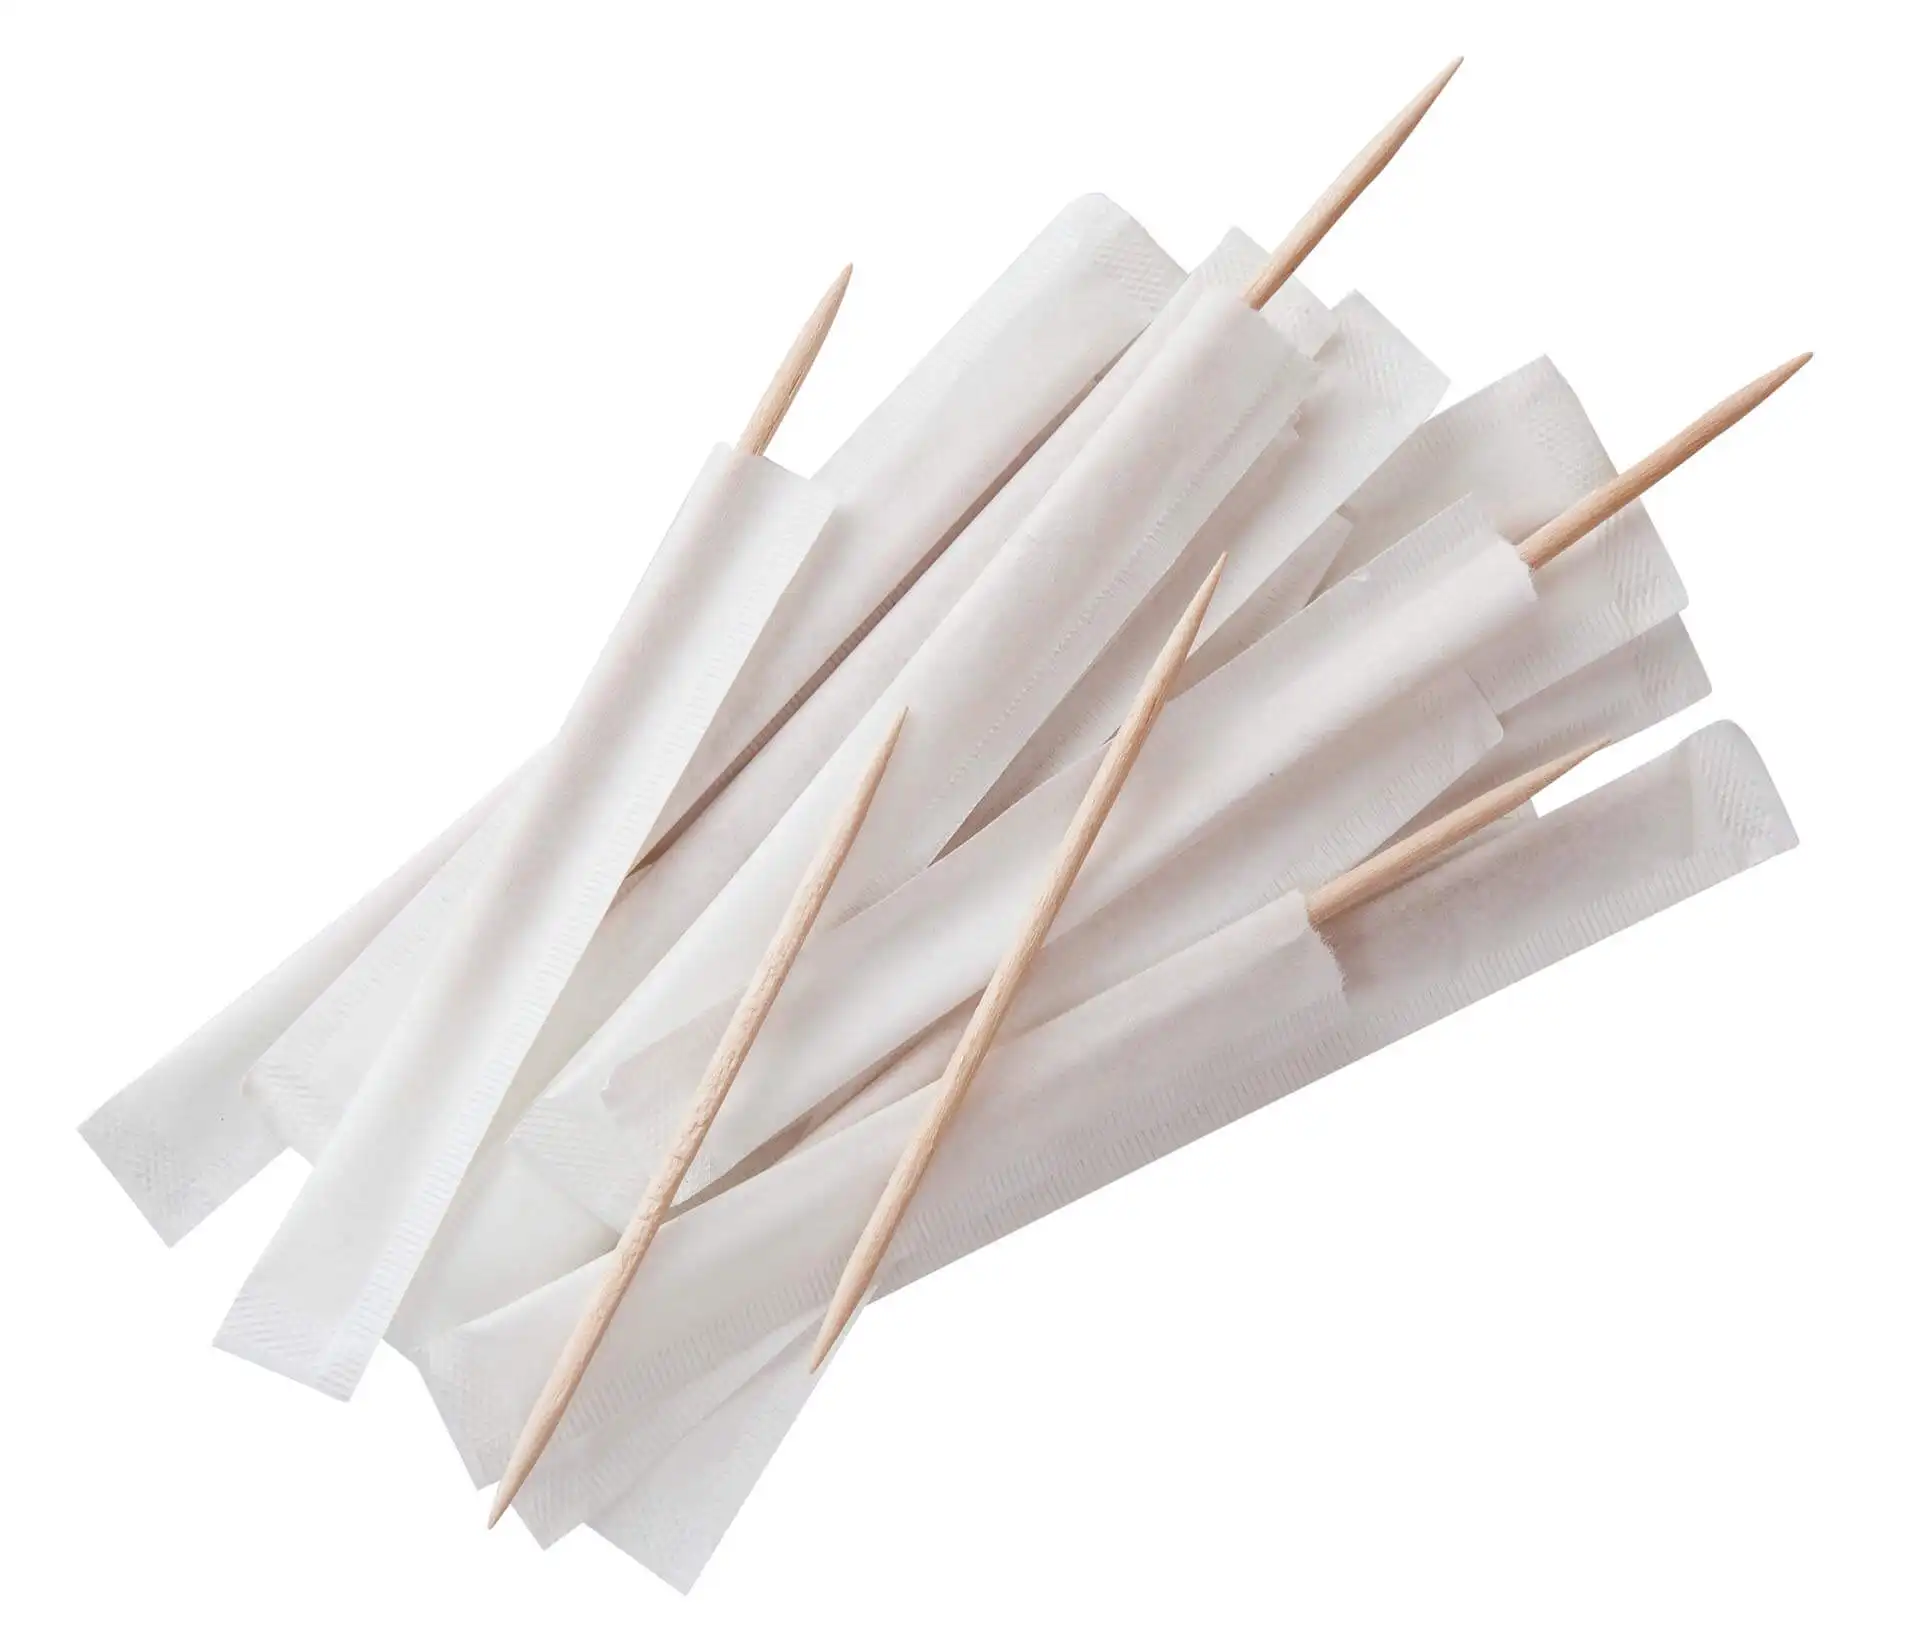 Palito de dentes com embalagem individual, envoltório de papel individual, palito de dente de bambu, 2.0mm de diâmetro